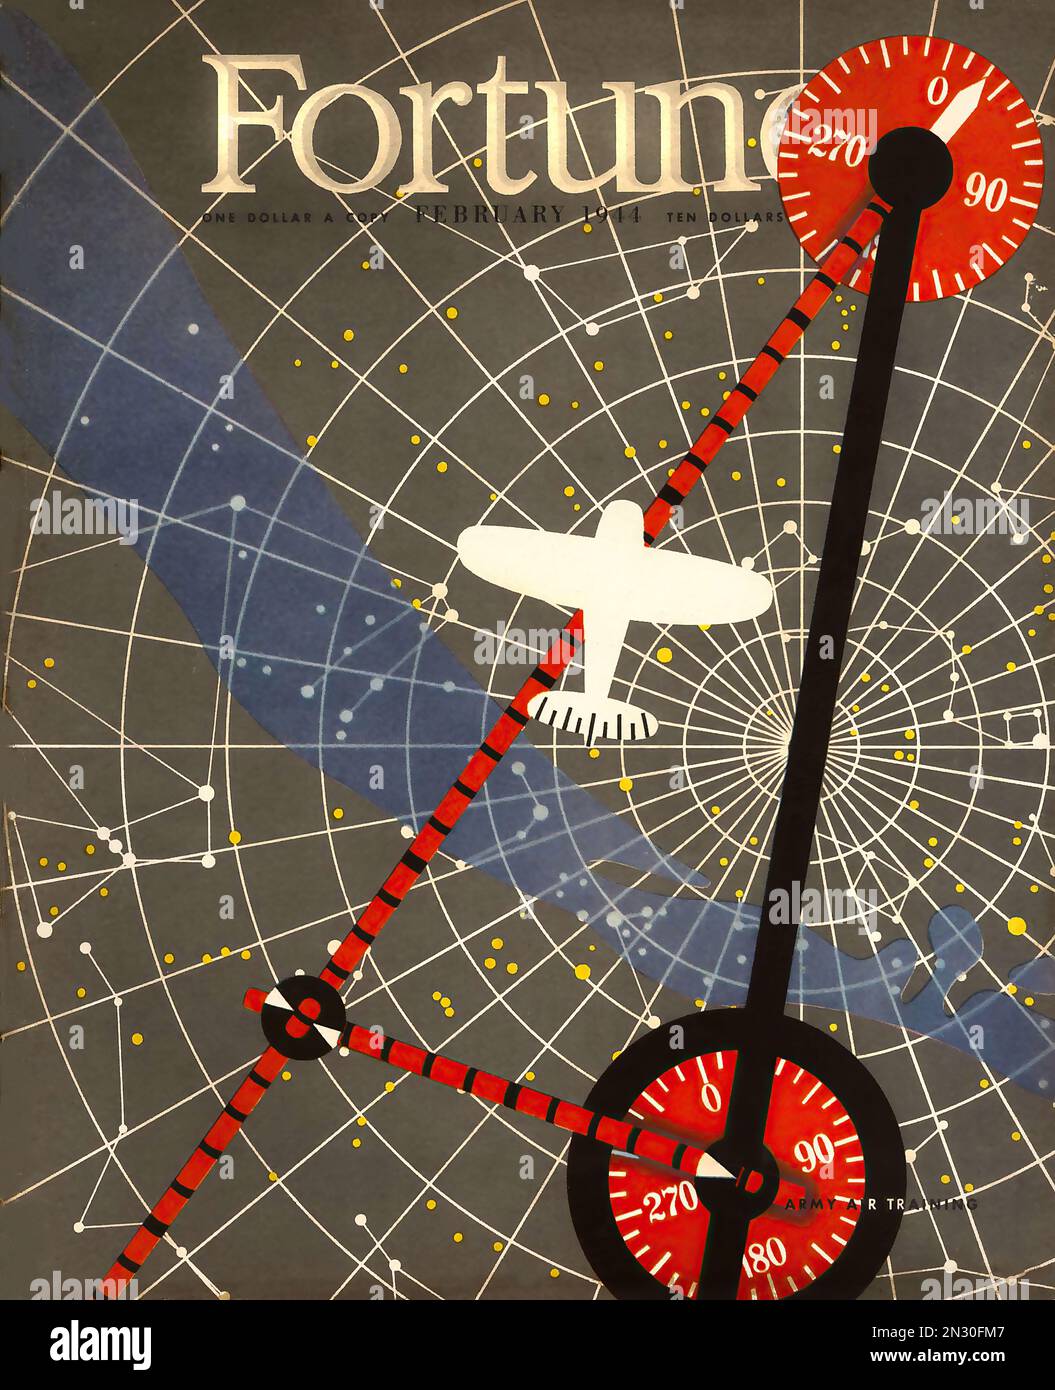 Fortune magazine -1944 navigation aérienne - couverture du magazine américain pendant la Seconde Guerre mondiale Banque D'Images